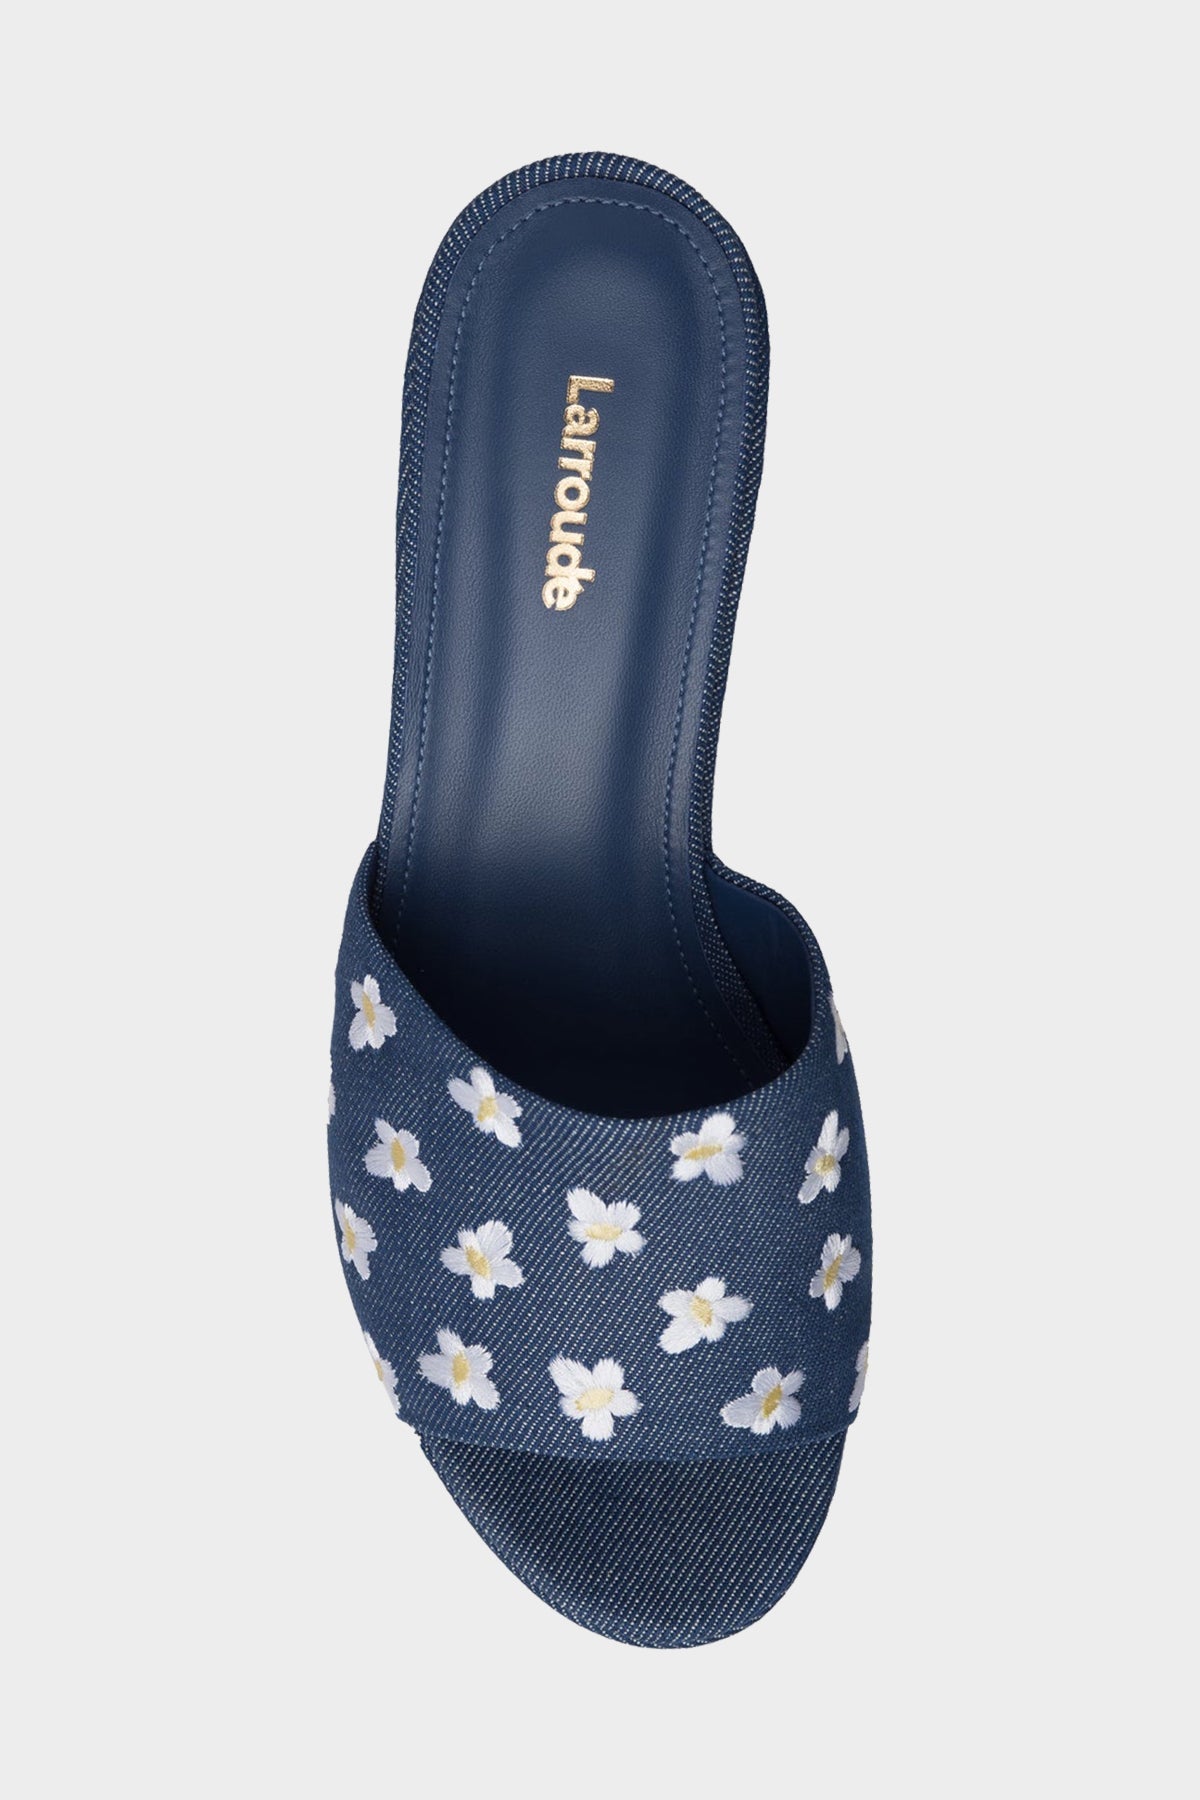 Miso Platform Sandal in Blue Denim - shop-olivia.com